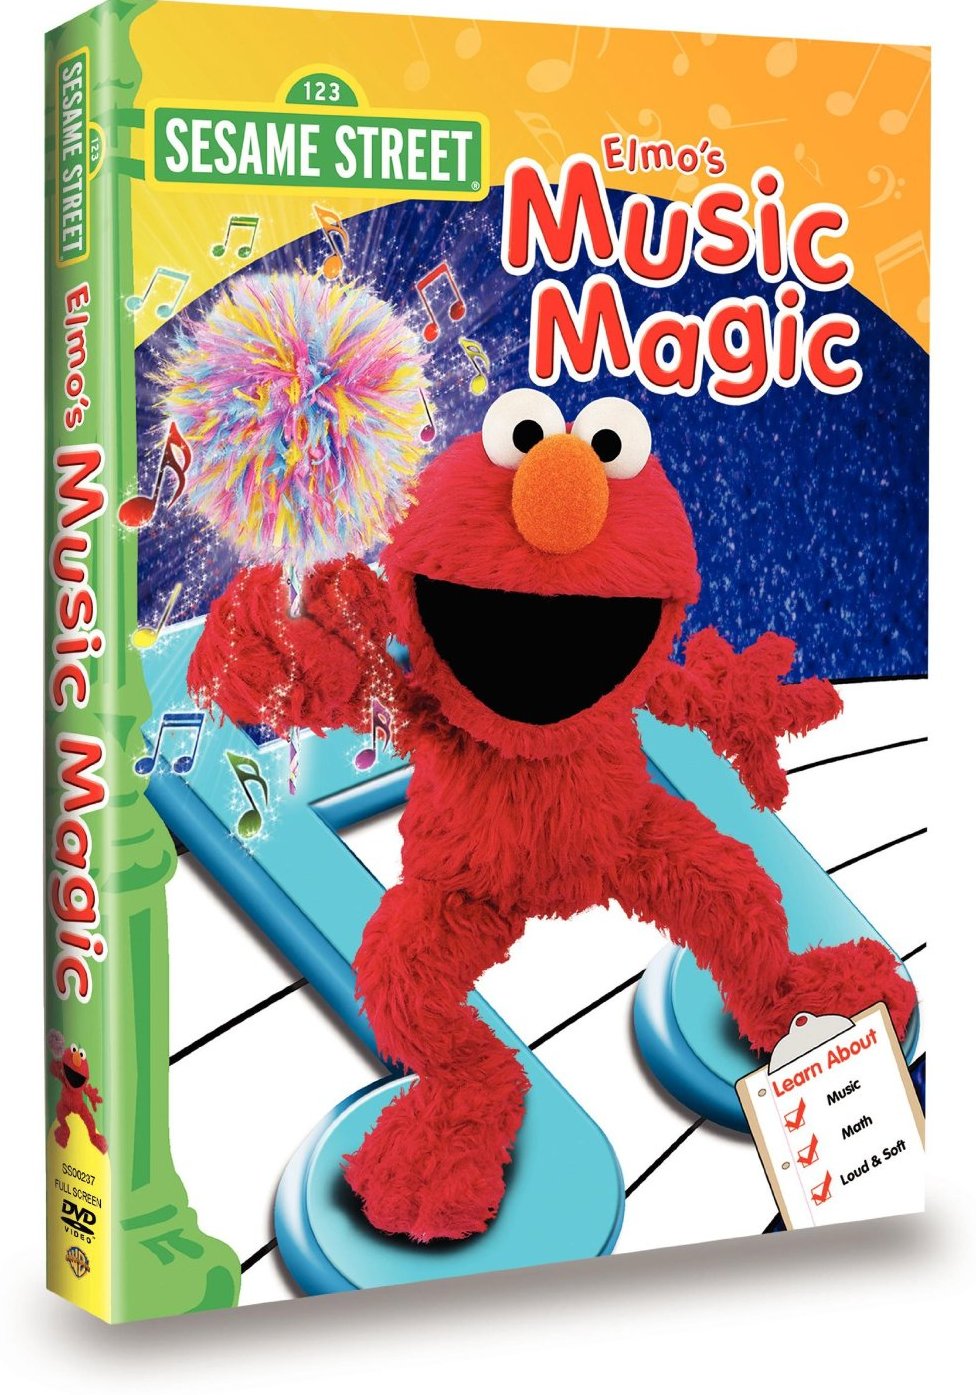 Elmo's Music Magic movie